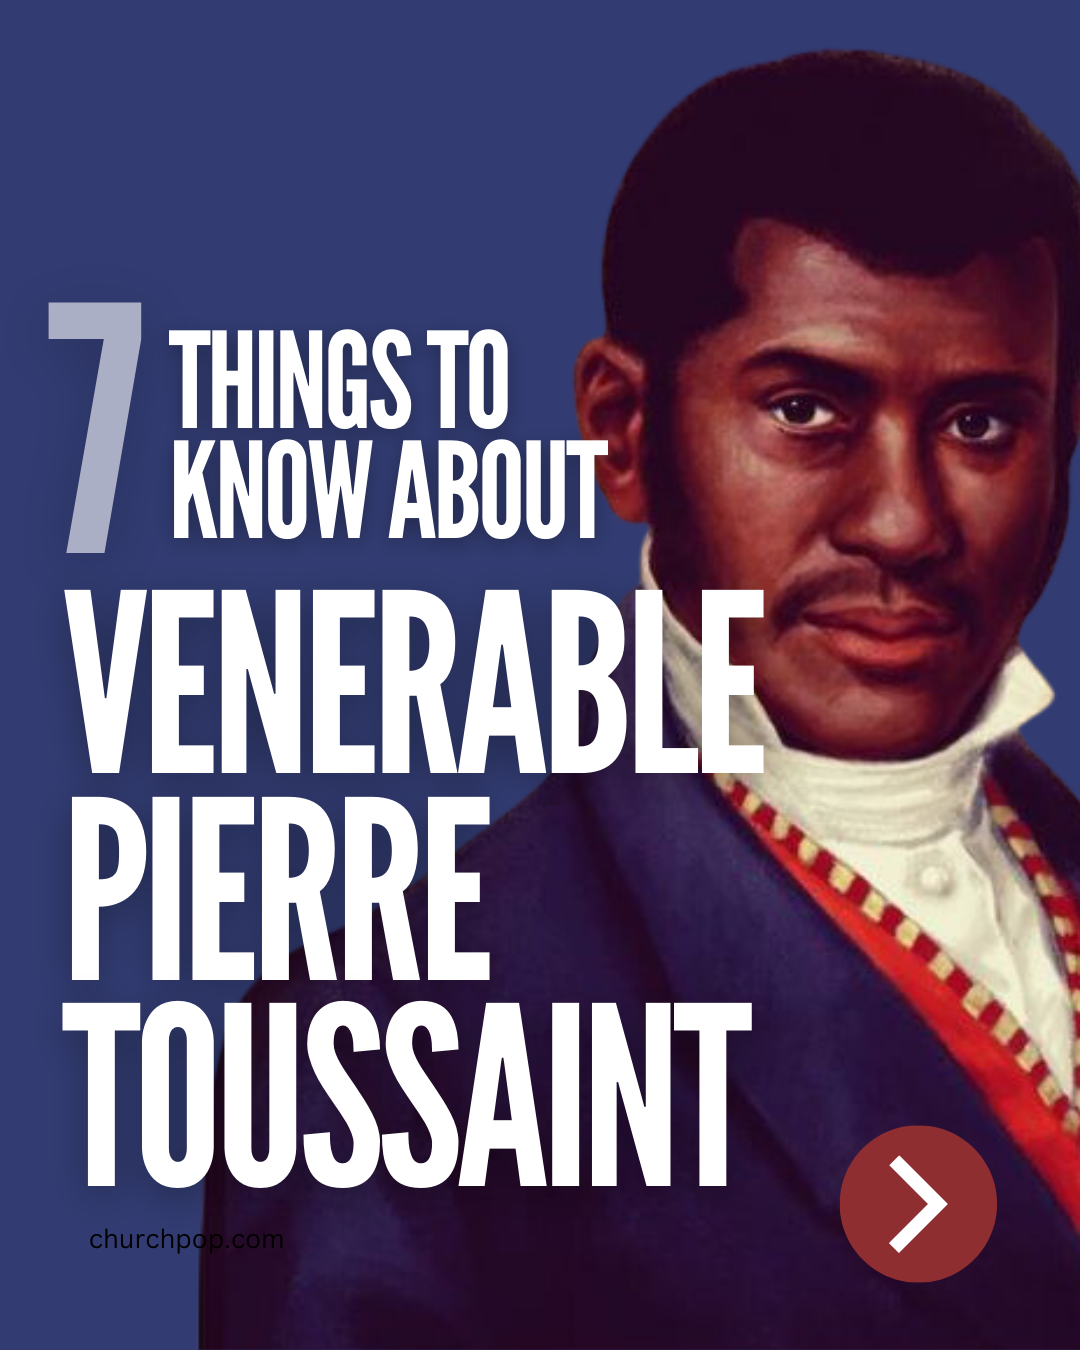 Pierre Toussaint, Venerable Pierre Toussaint